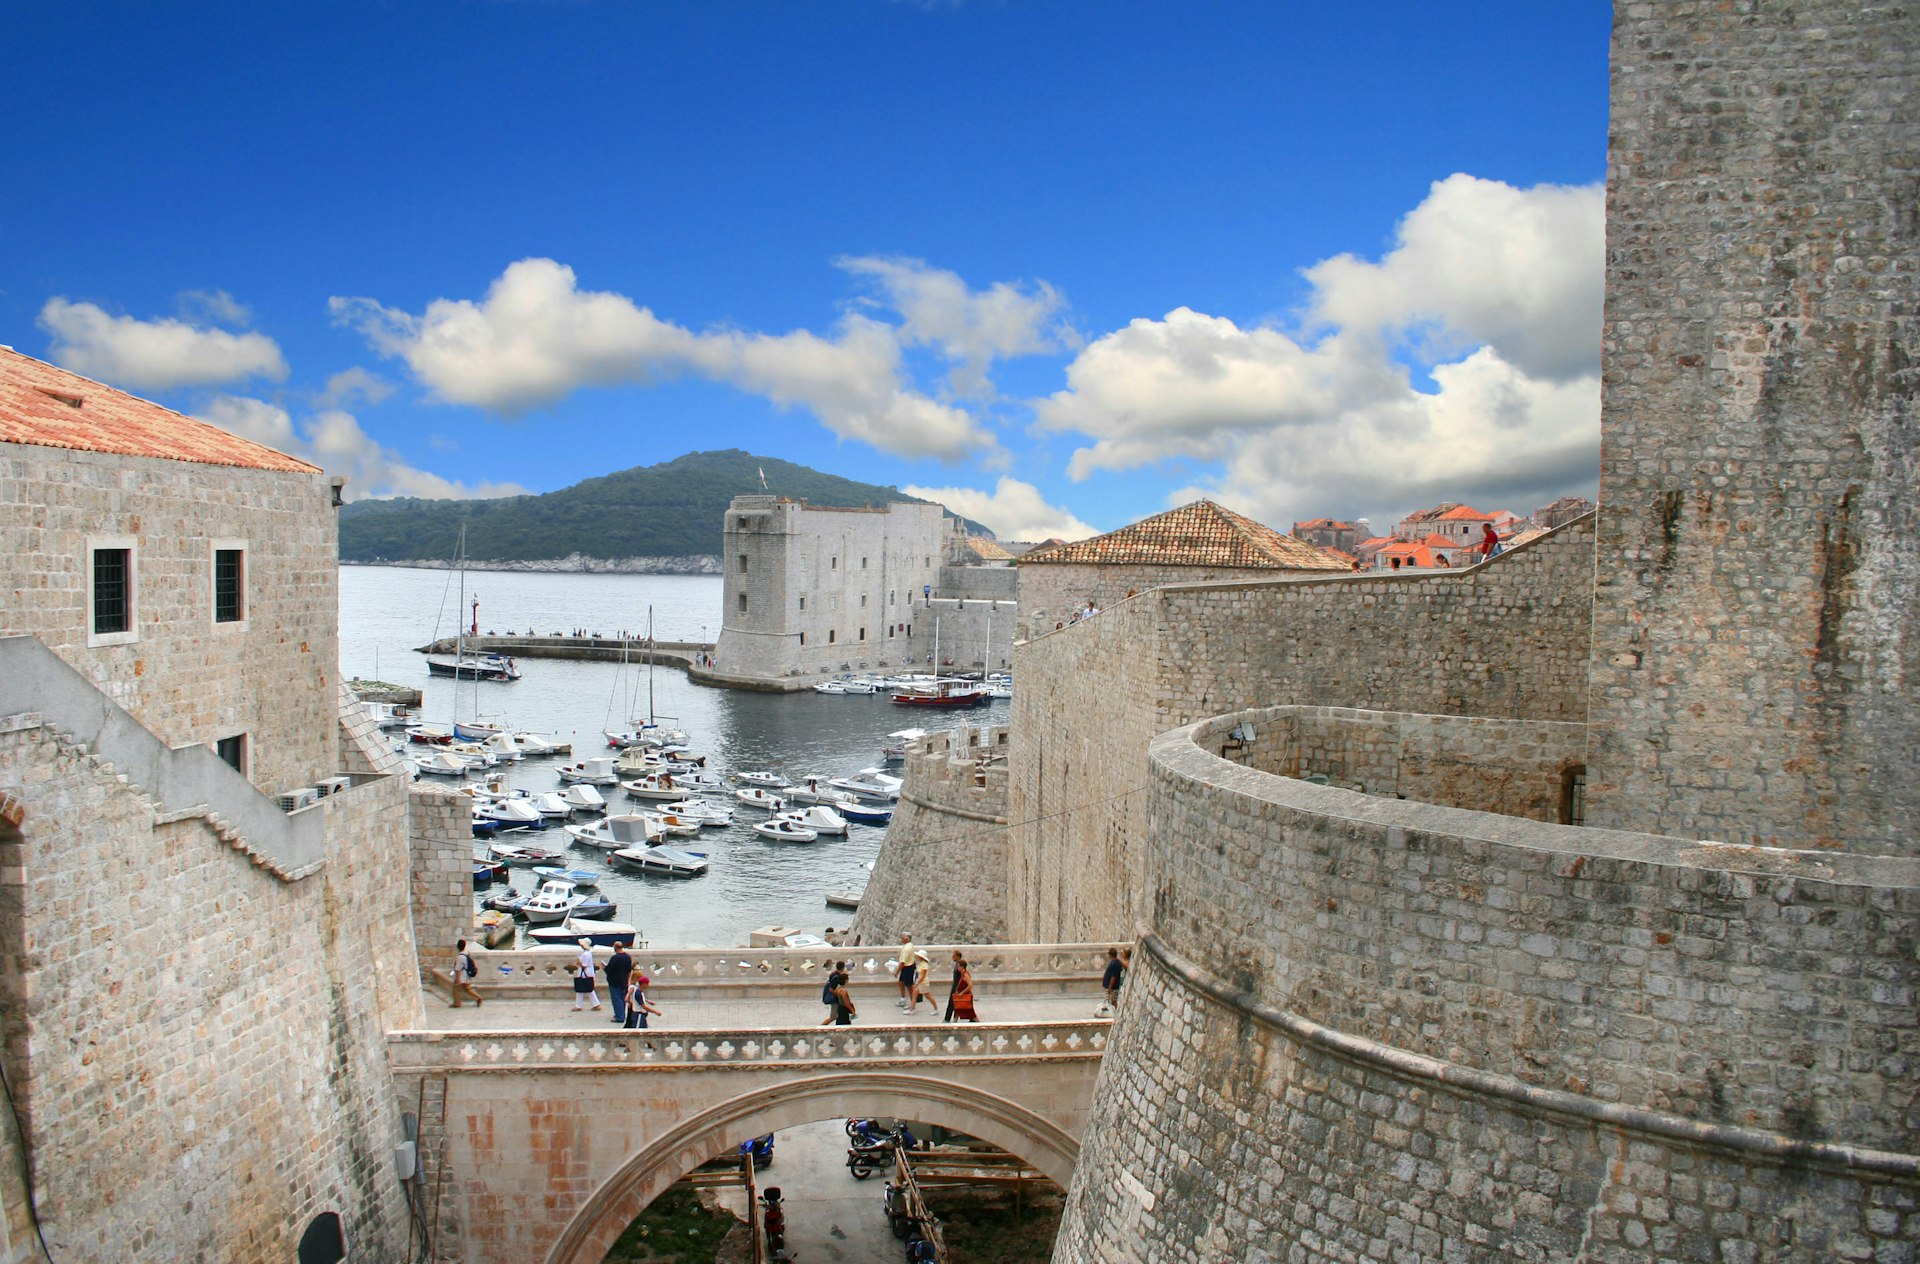 Gente cruzando un puente de piedra en Dubrovnik con el puerto más allá